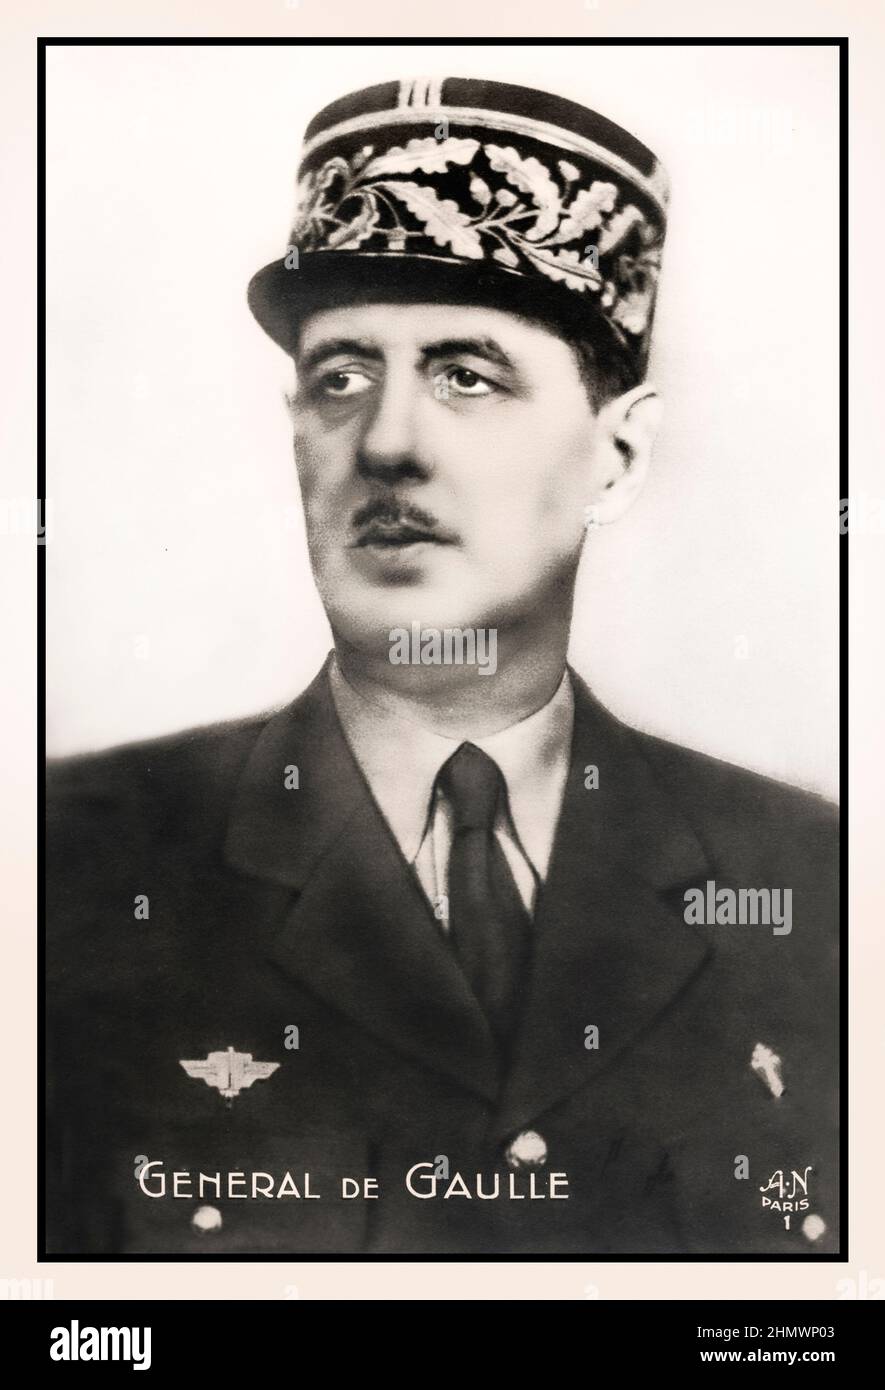 IL GENERALE DE GAULLE Charles André Joseph Marie de Gaulle era un ufficiale e statista dell'esercito francese che guidò la Francia libera contro la Germania nazista nella seconda guerra mondiale e presiedette il governo provvisorio della Repubblica francese dal 1944 al 1946 al fine di ripristinare la democrazia in Francia. Foto Stock